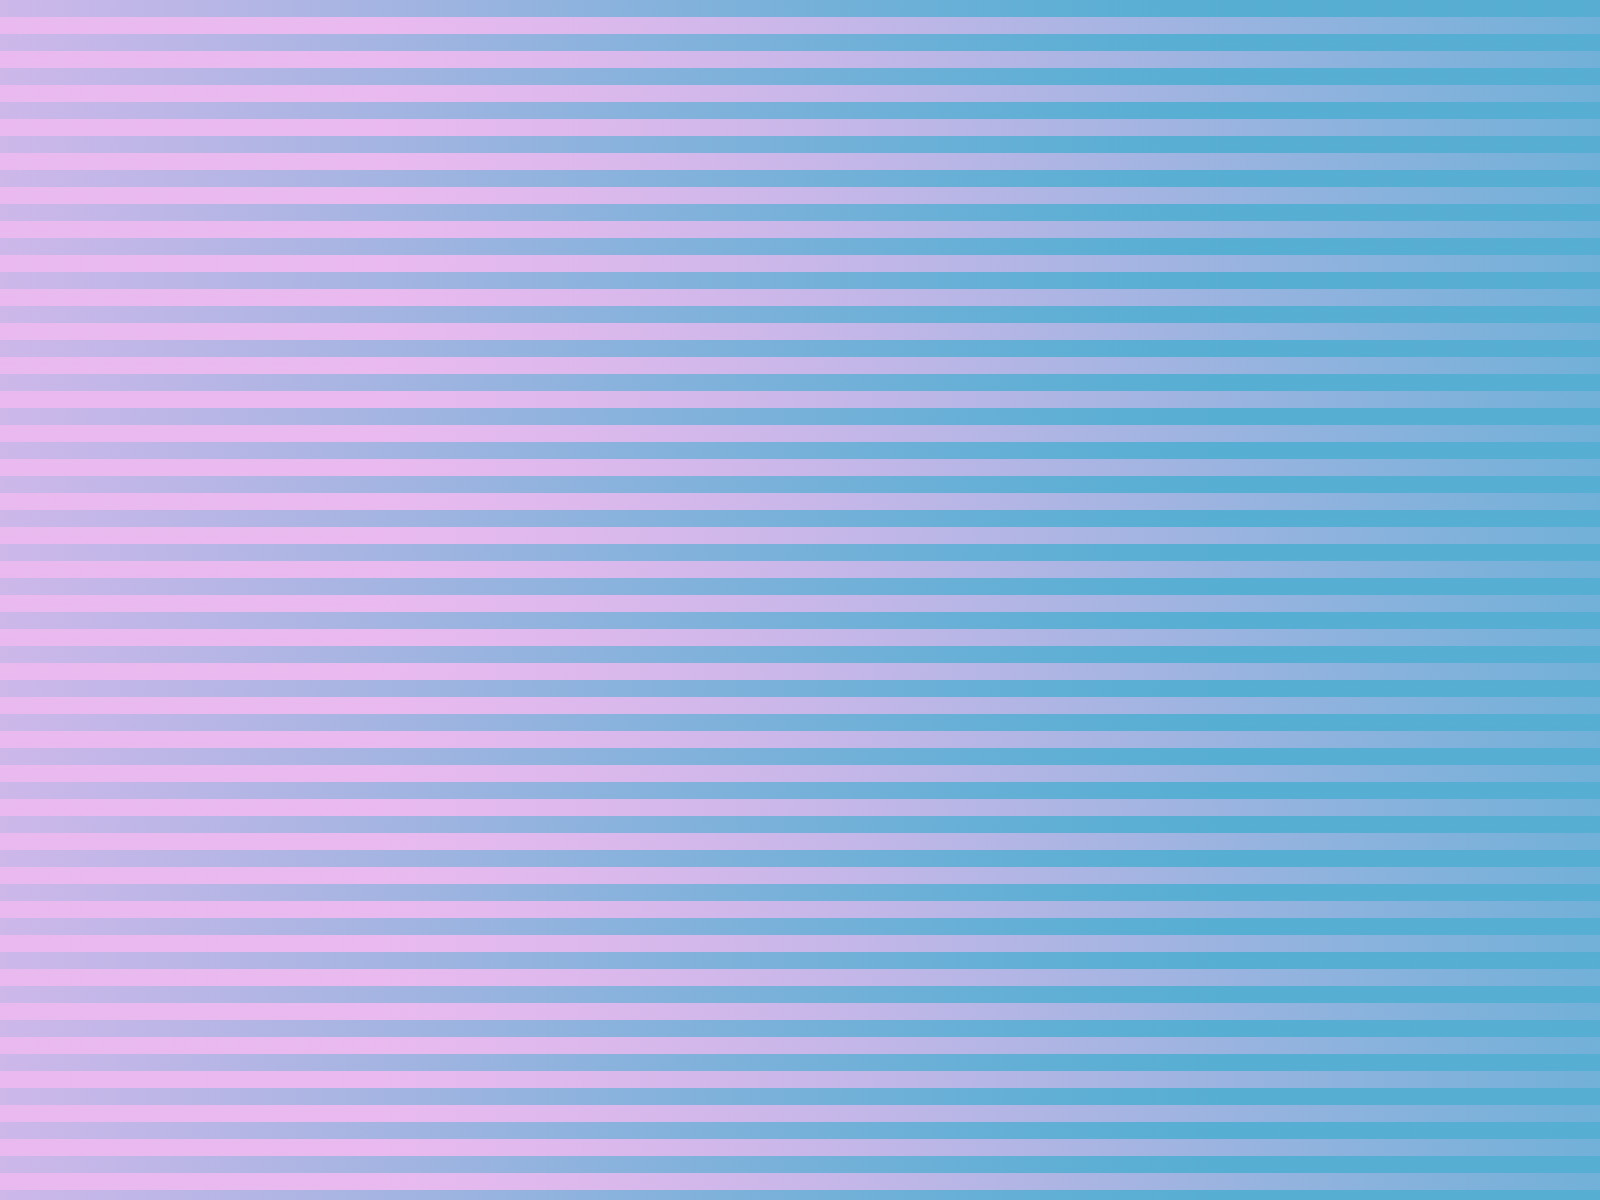 Sh Yn Design Stripe Pattern Wallpaper Turquoise Pink